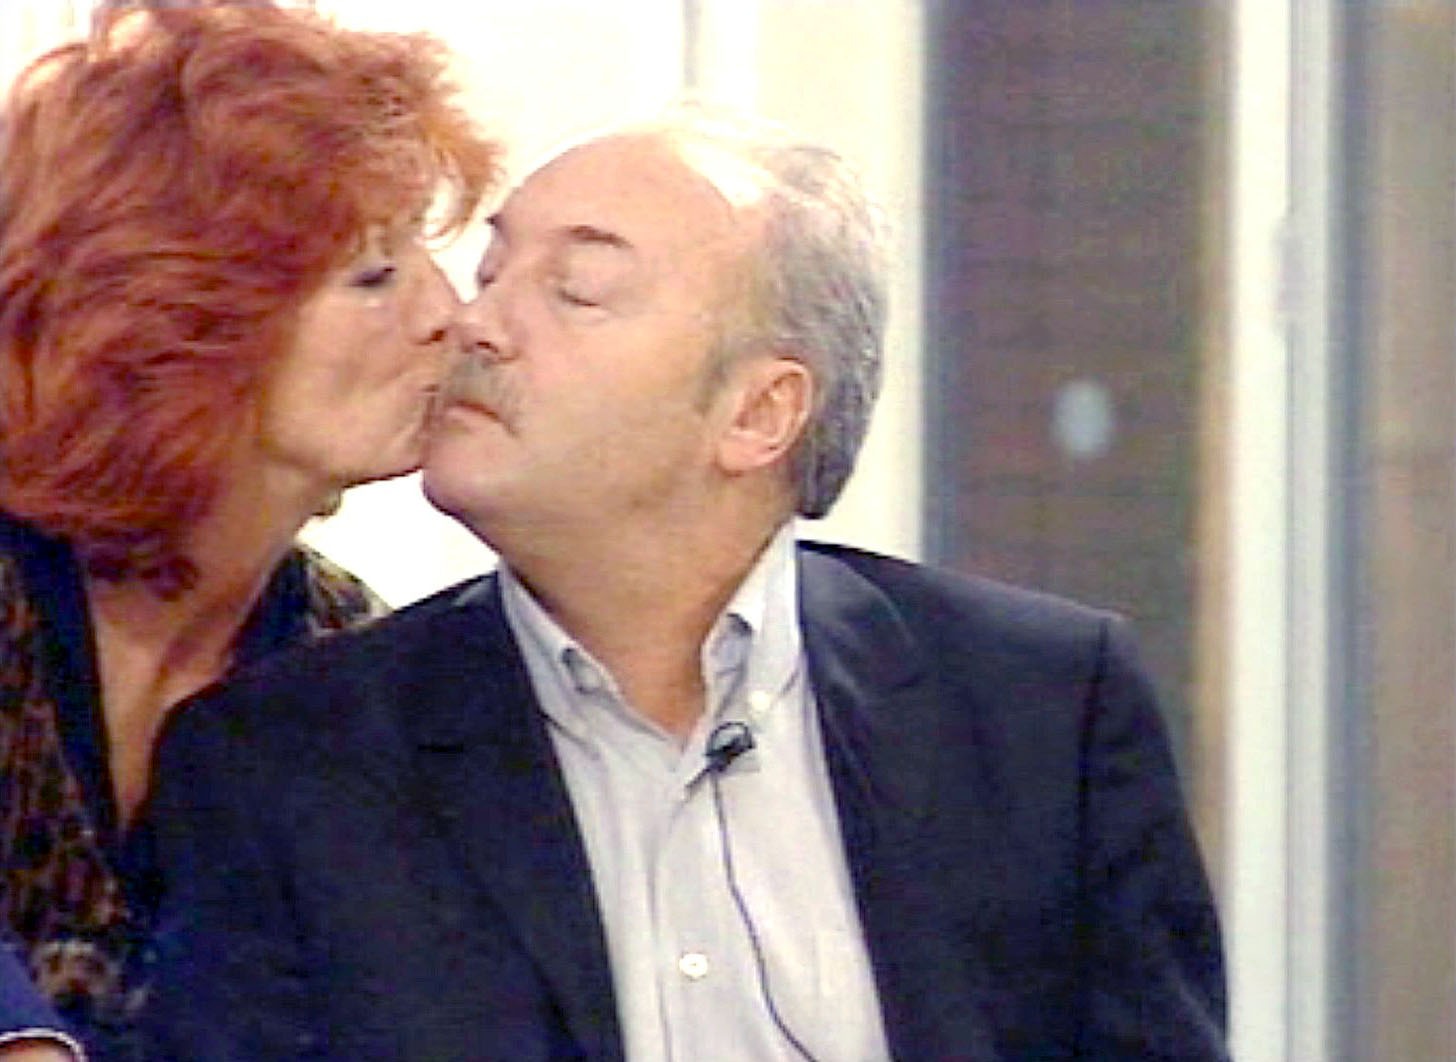 Rula Lenska küsst George Galloway in der CBB-Serie im Jahr 2006